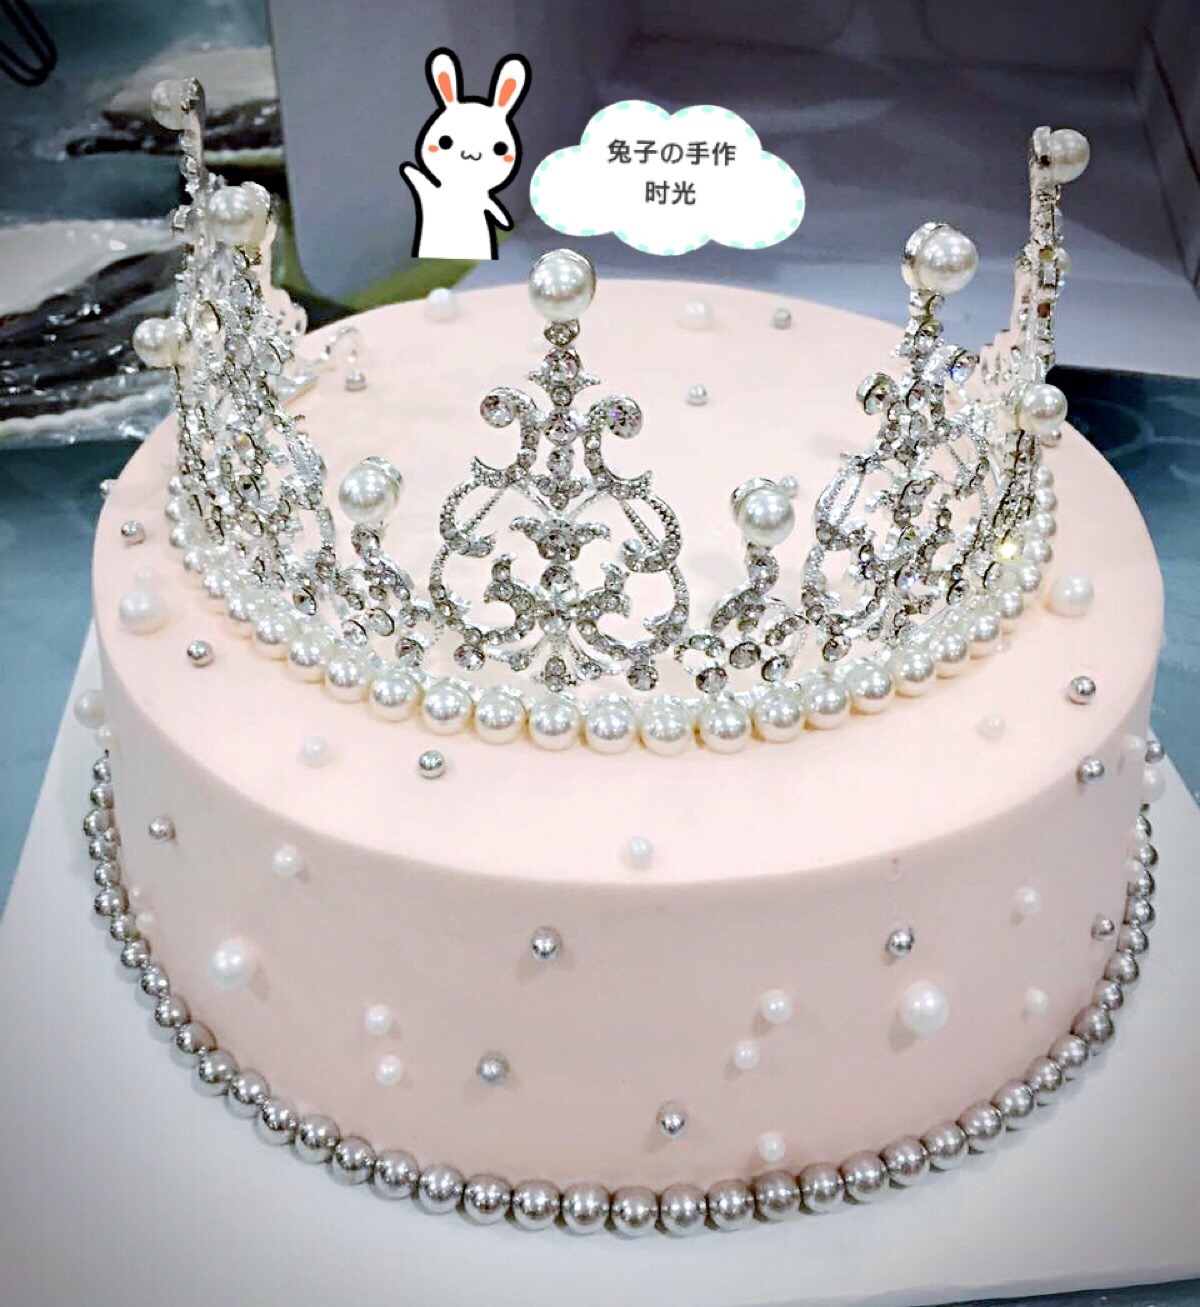 皇冠蛋糕 简单图片